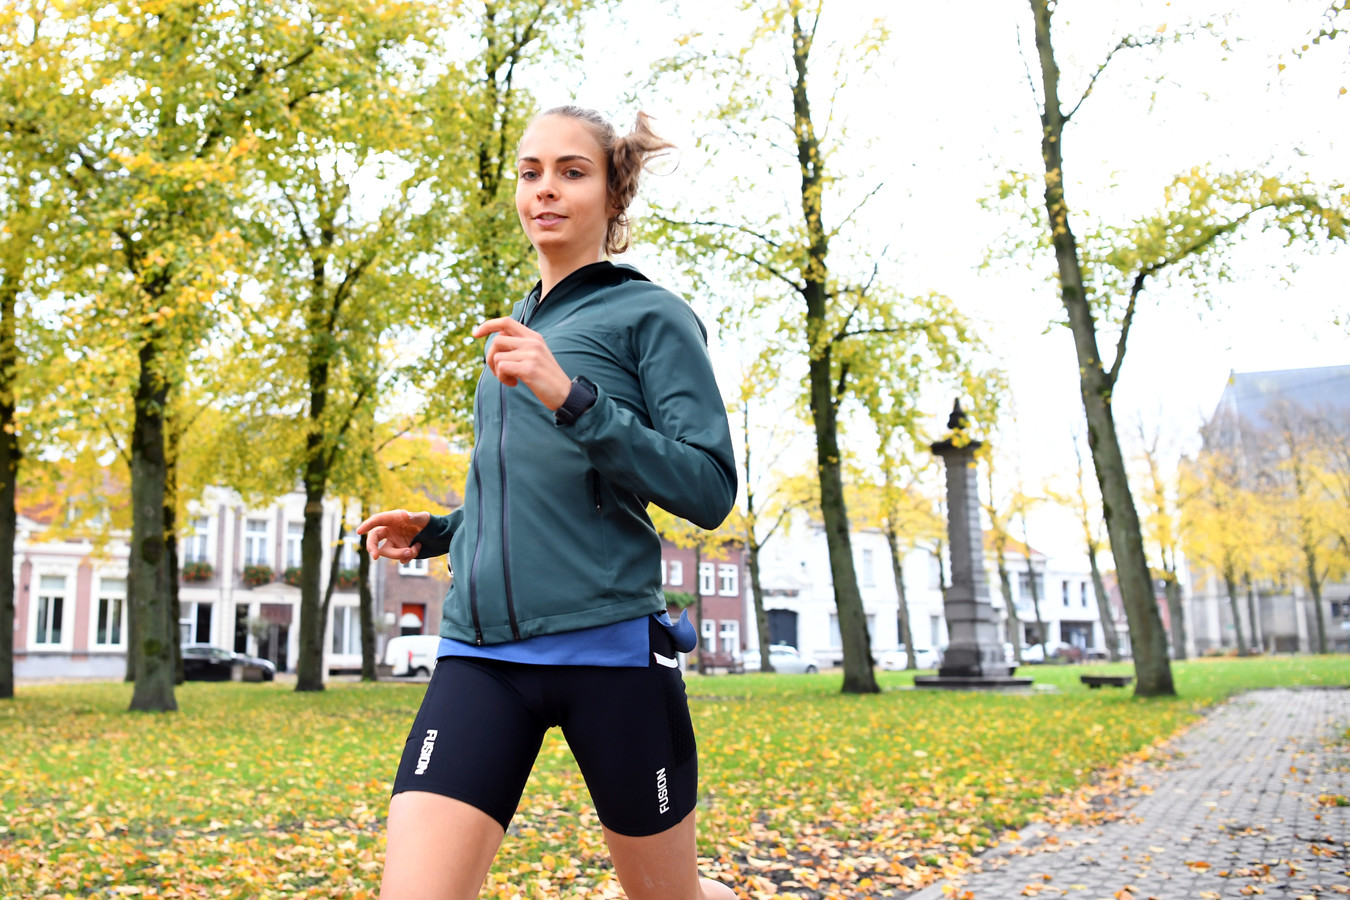 Hardloopster Emmy Maas is een van de deelneemsters aan de thuiseditie van de Van Oers marathon van Etten-Leur.